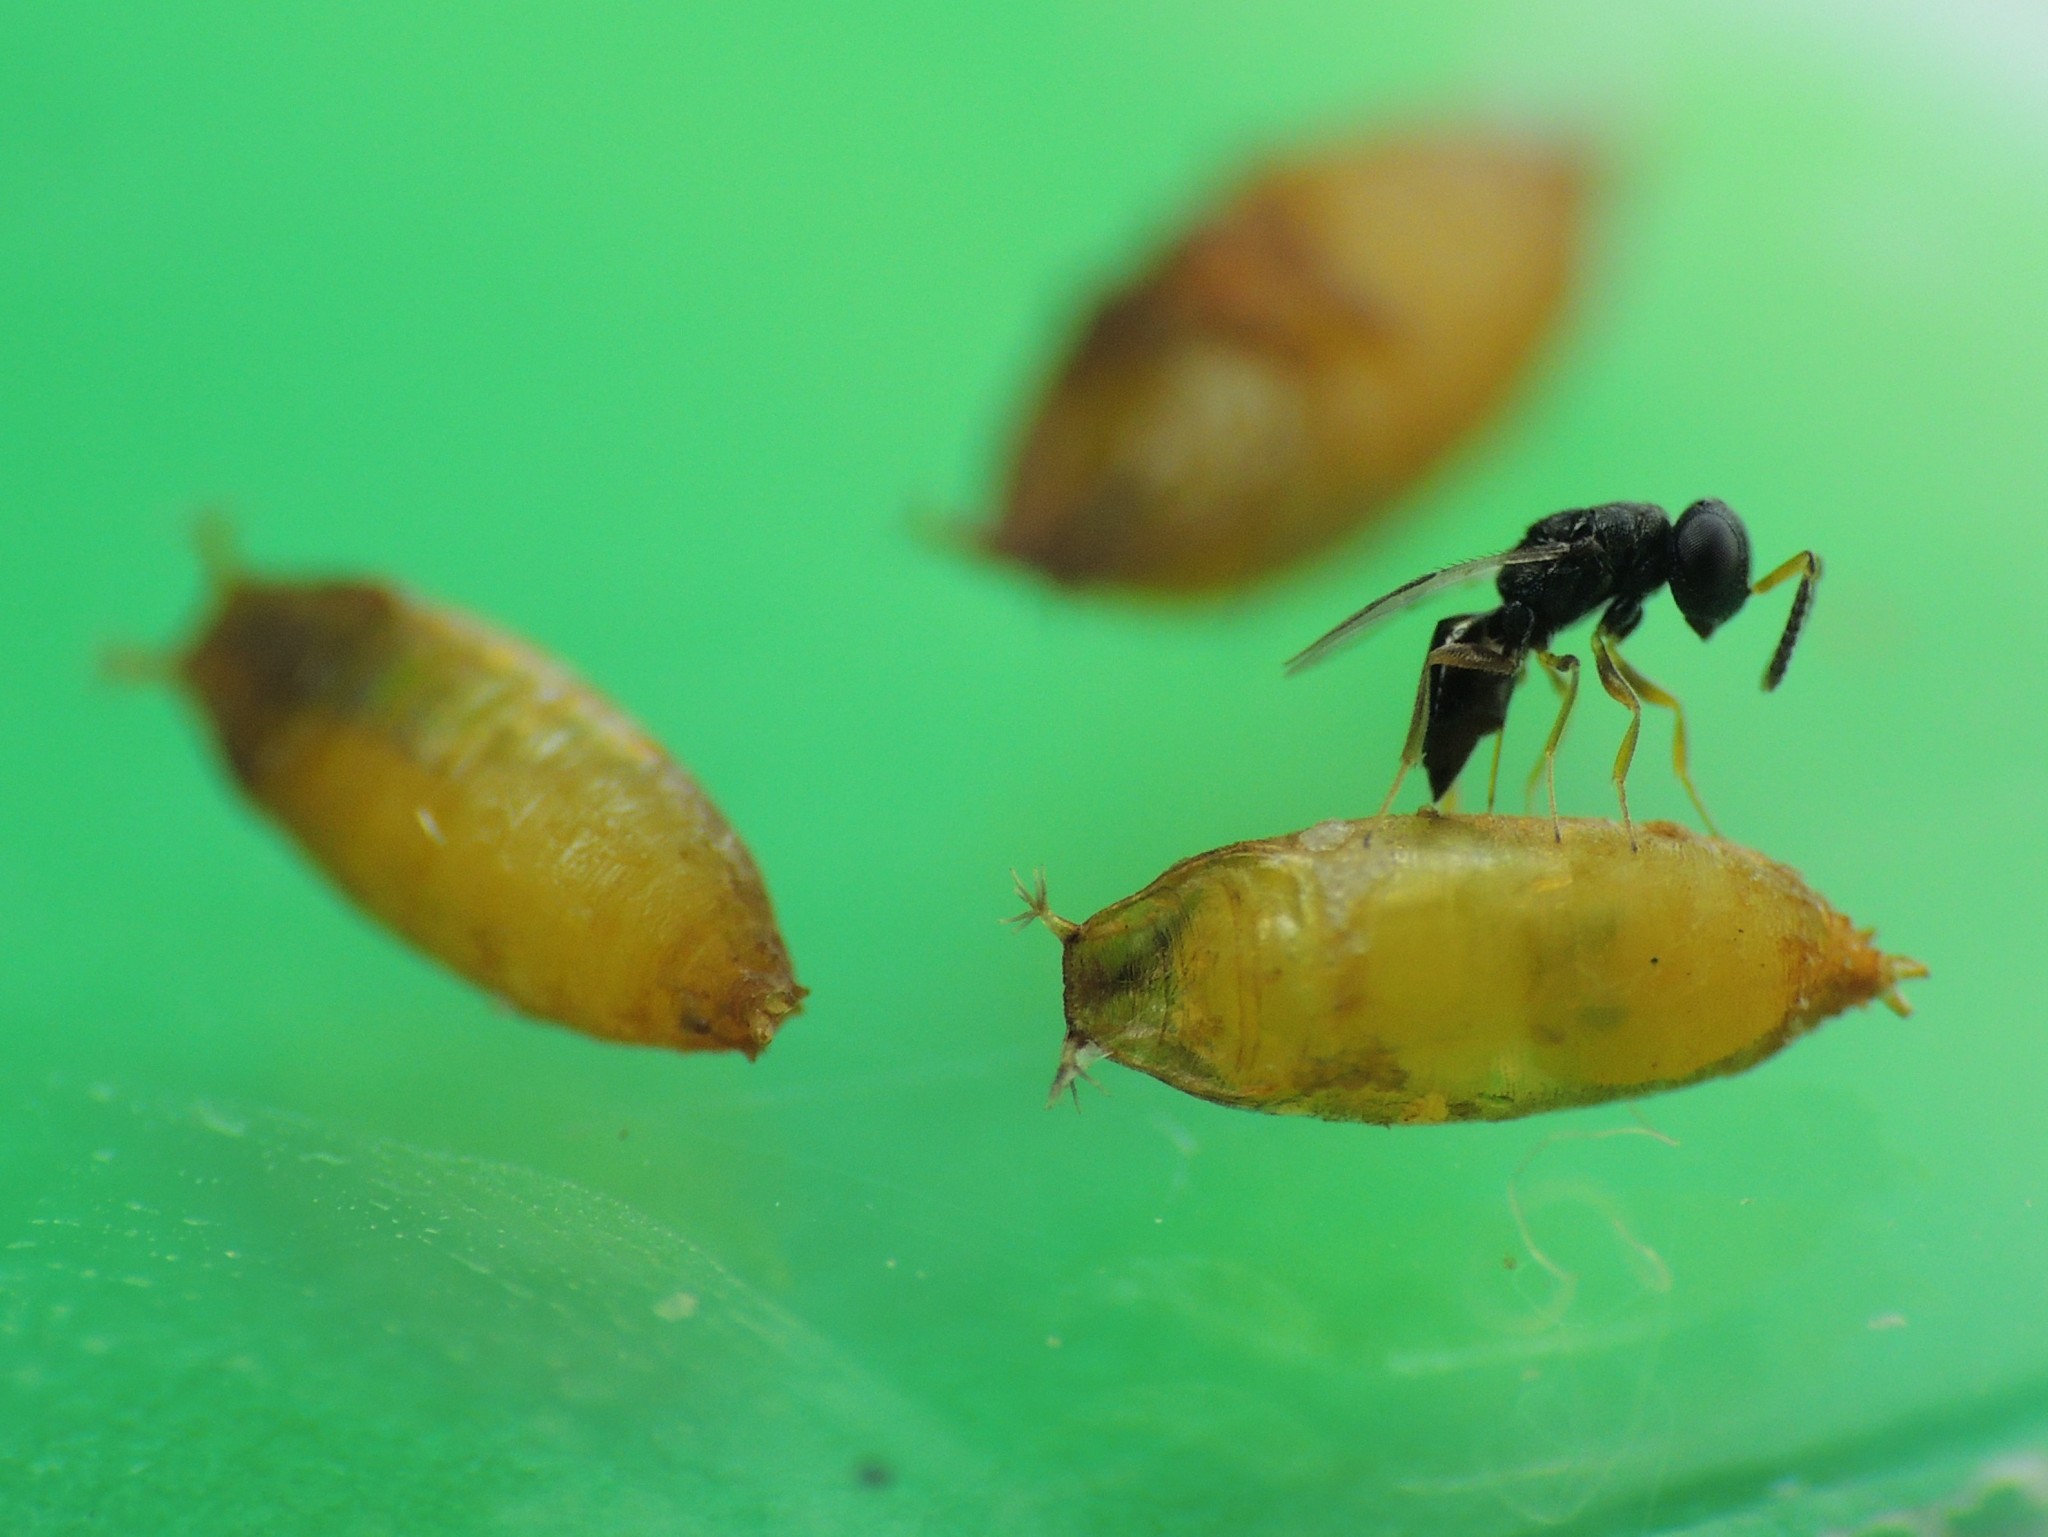 Liberan agente de control biológico para Drosophila Suzukii en cultivos orgánicos